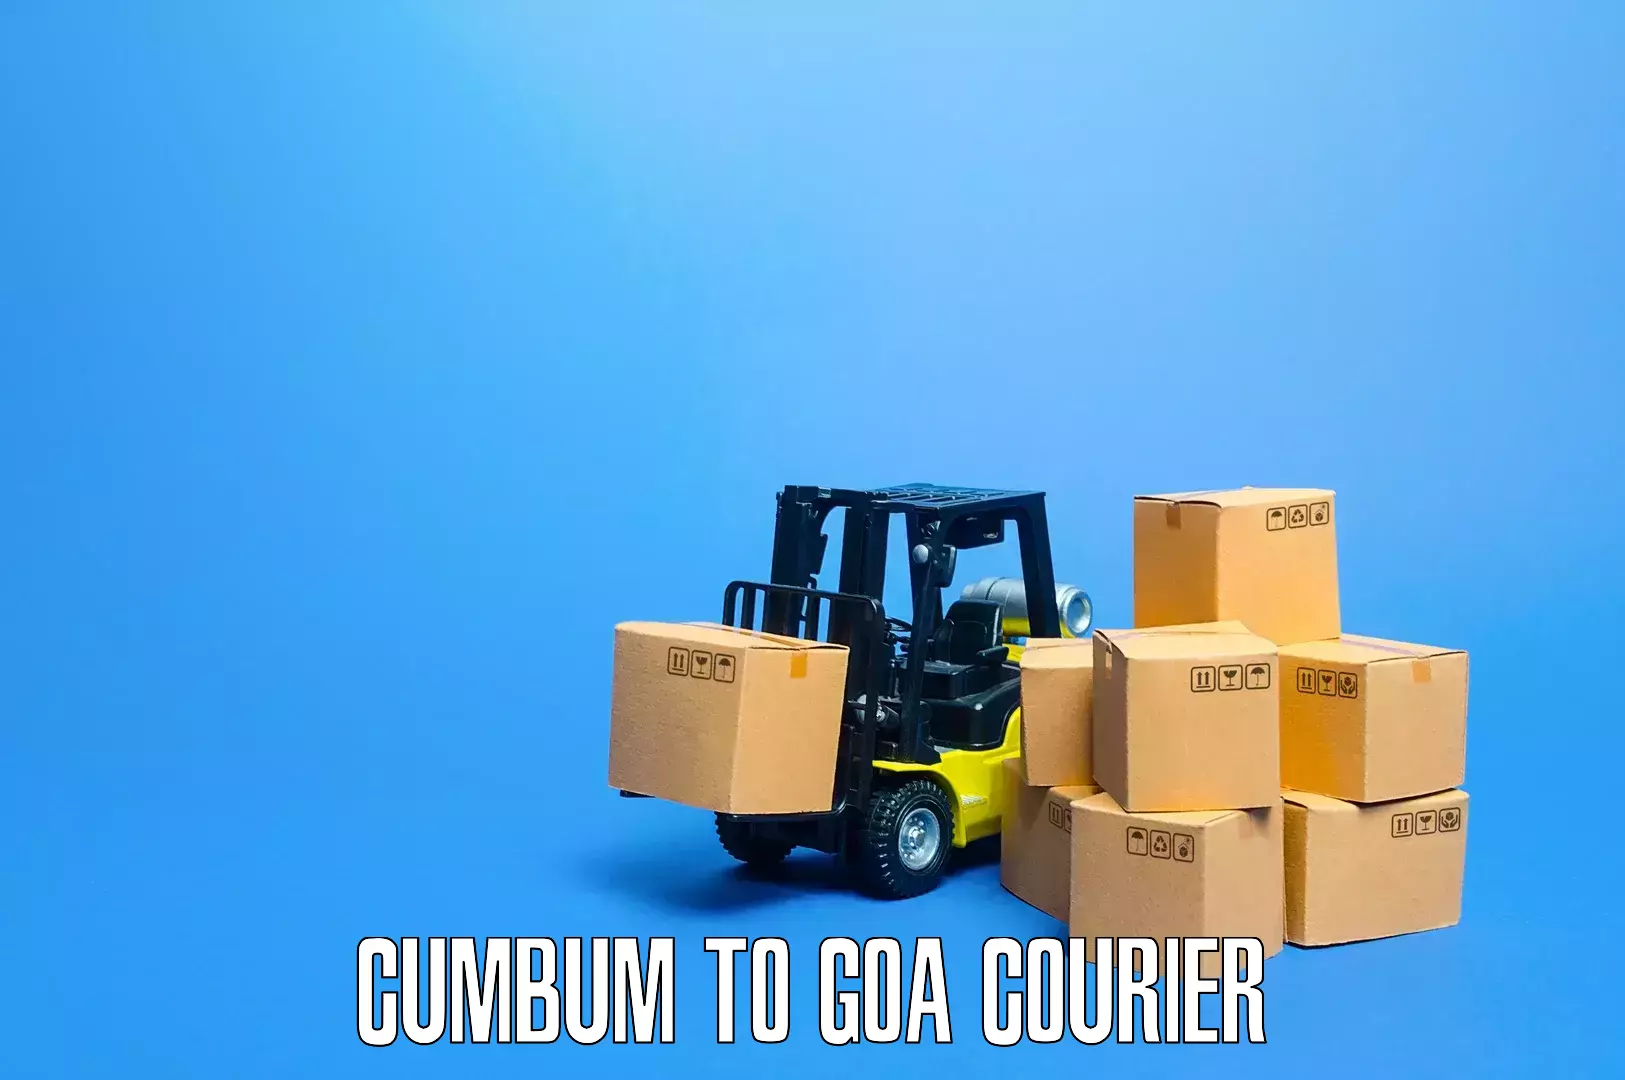 Furniture delivery service Cumbum to NIT Goa